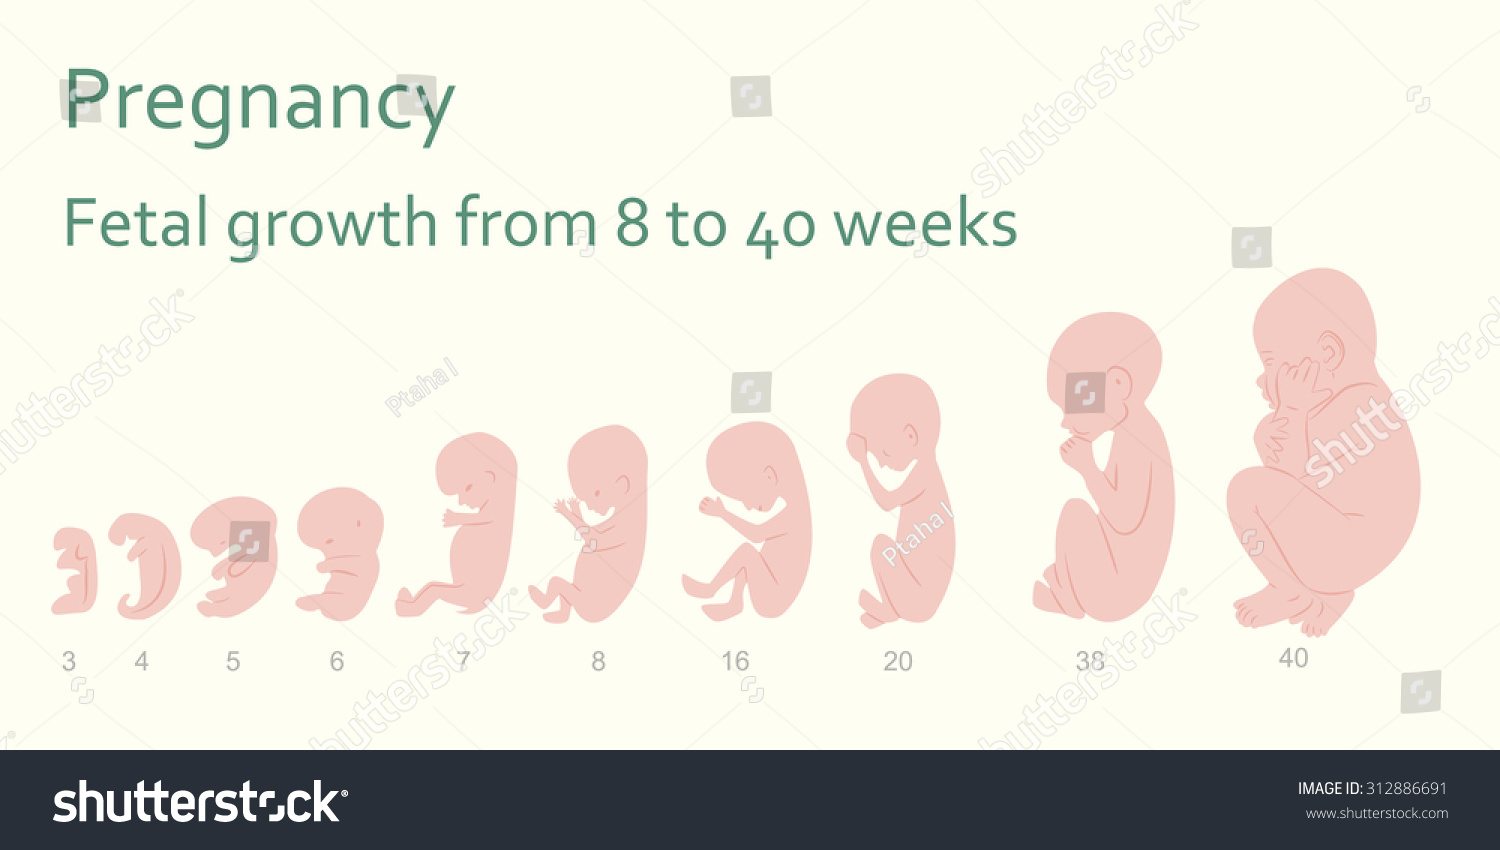 Pregnancy Fetal Growth 8 40 Weeks Stock Vector 312886691 ...